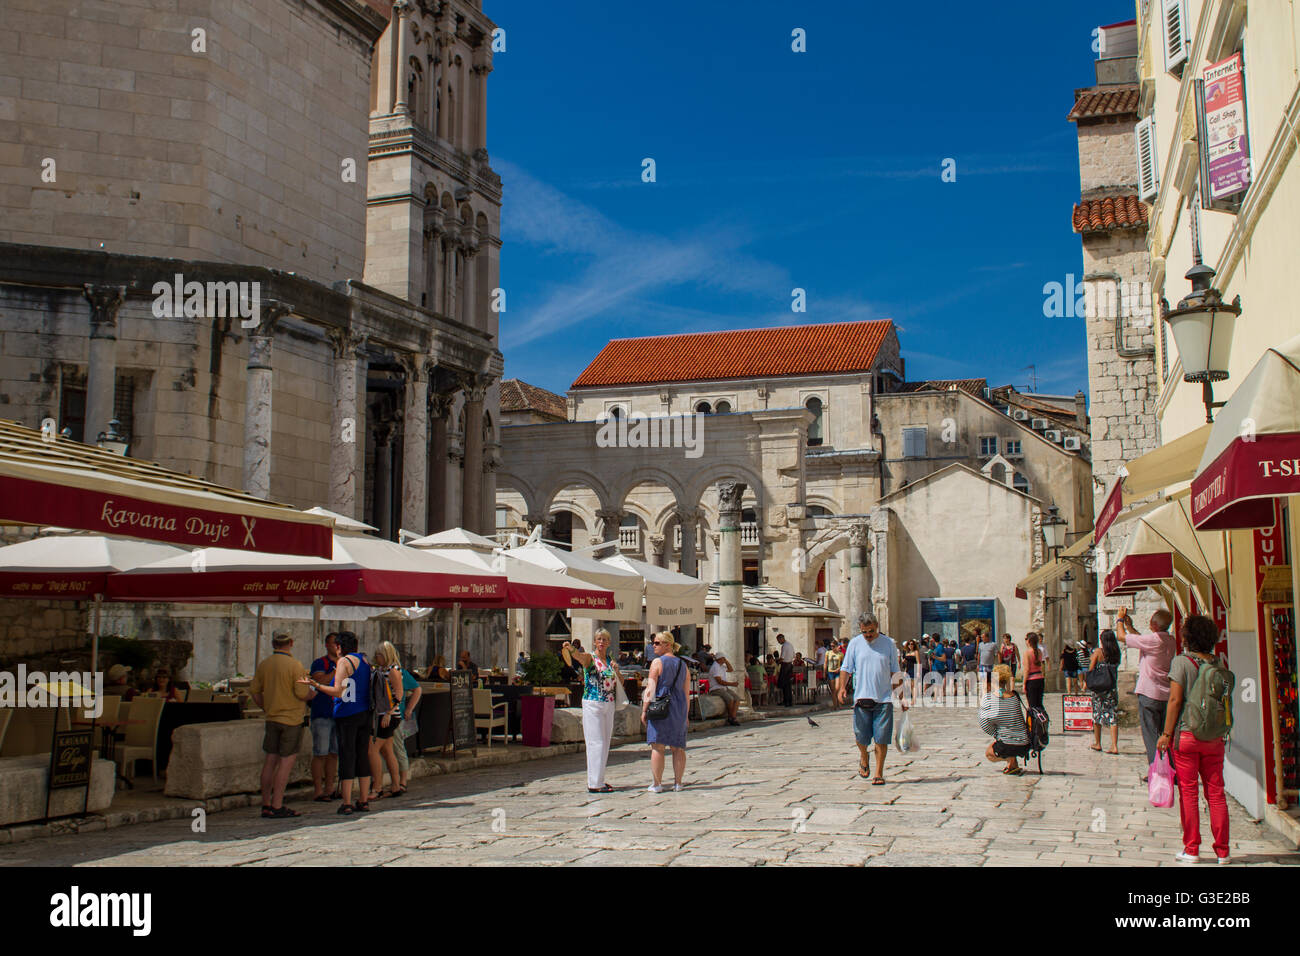 SPLIT, CROACIA - Agosto 31, 2014: Los turistas que caminan en el casco antiguo de la ciudad en un día de verano. Split es destinati costeras turísticas populares Foto de stock